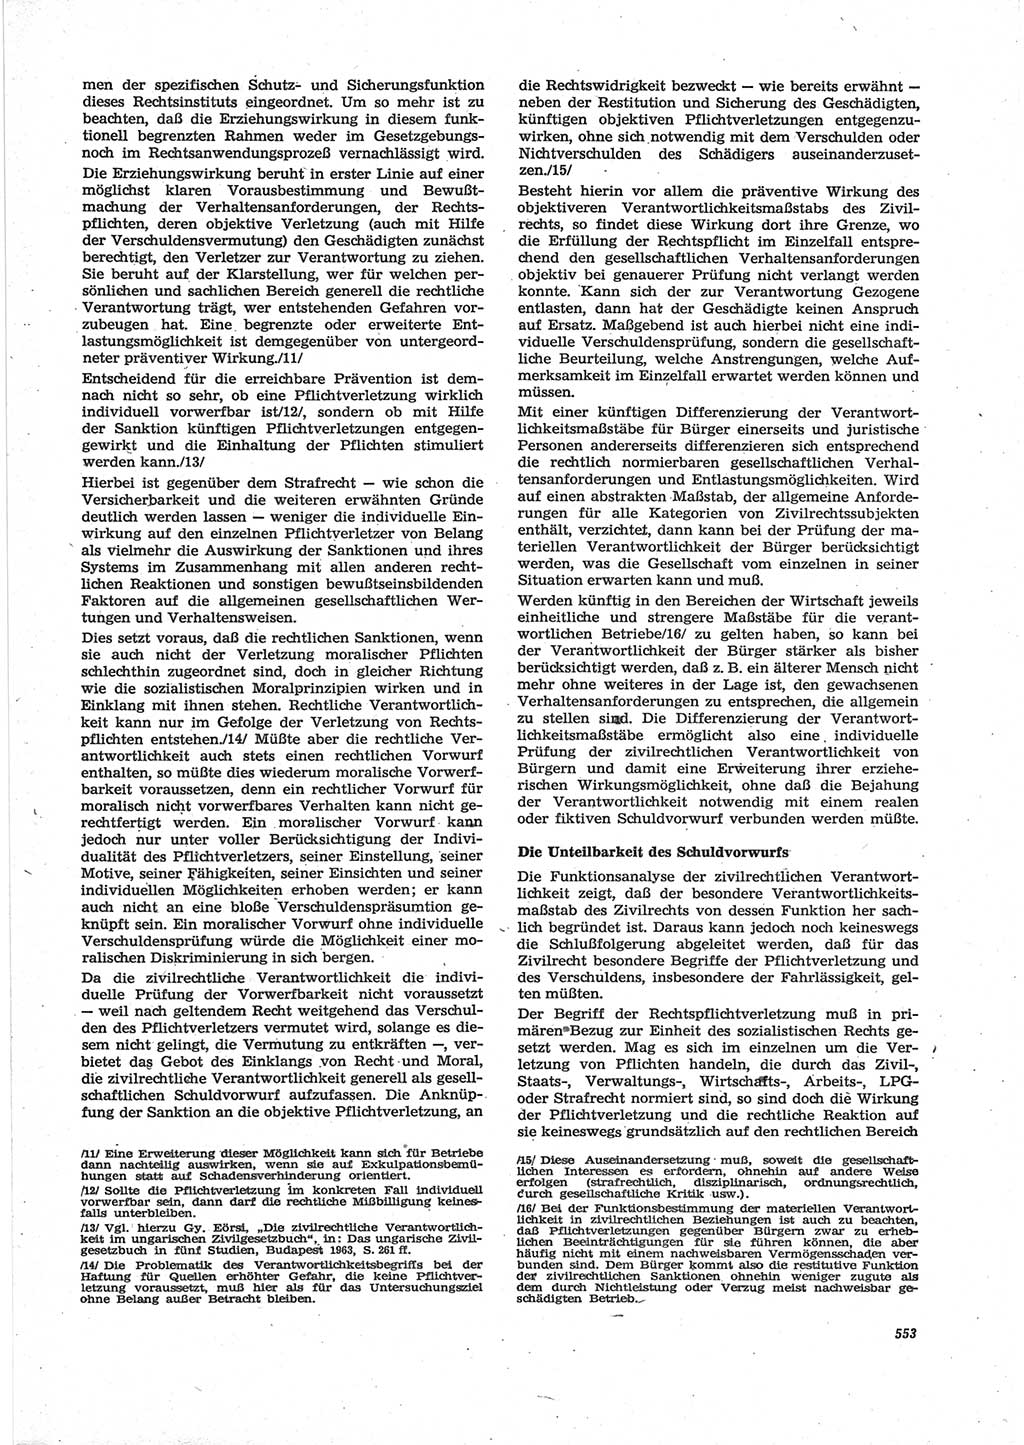 Neue Justiz (NJ), Zeitschrift für Recht und Rechtswissenschaft [Deutsche Demokratische Republik (DDR)], 28. Jahrgang 1974, Seite 553 (NJ DDR 1974, S. 553)